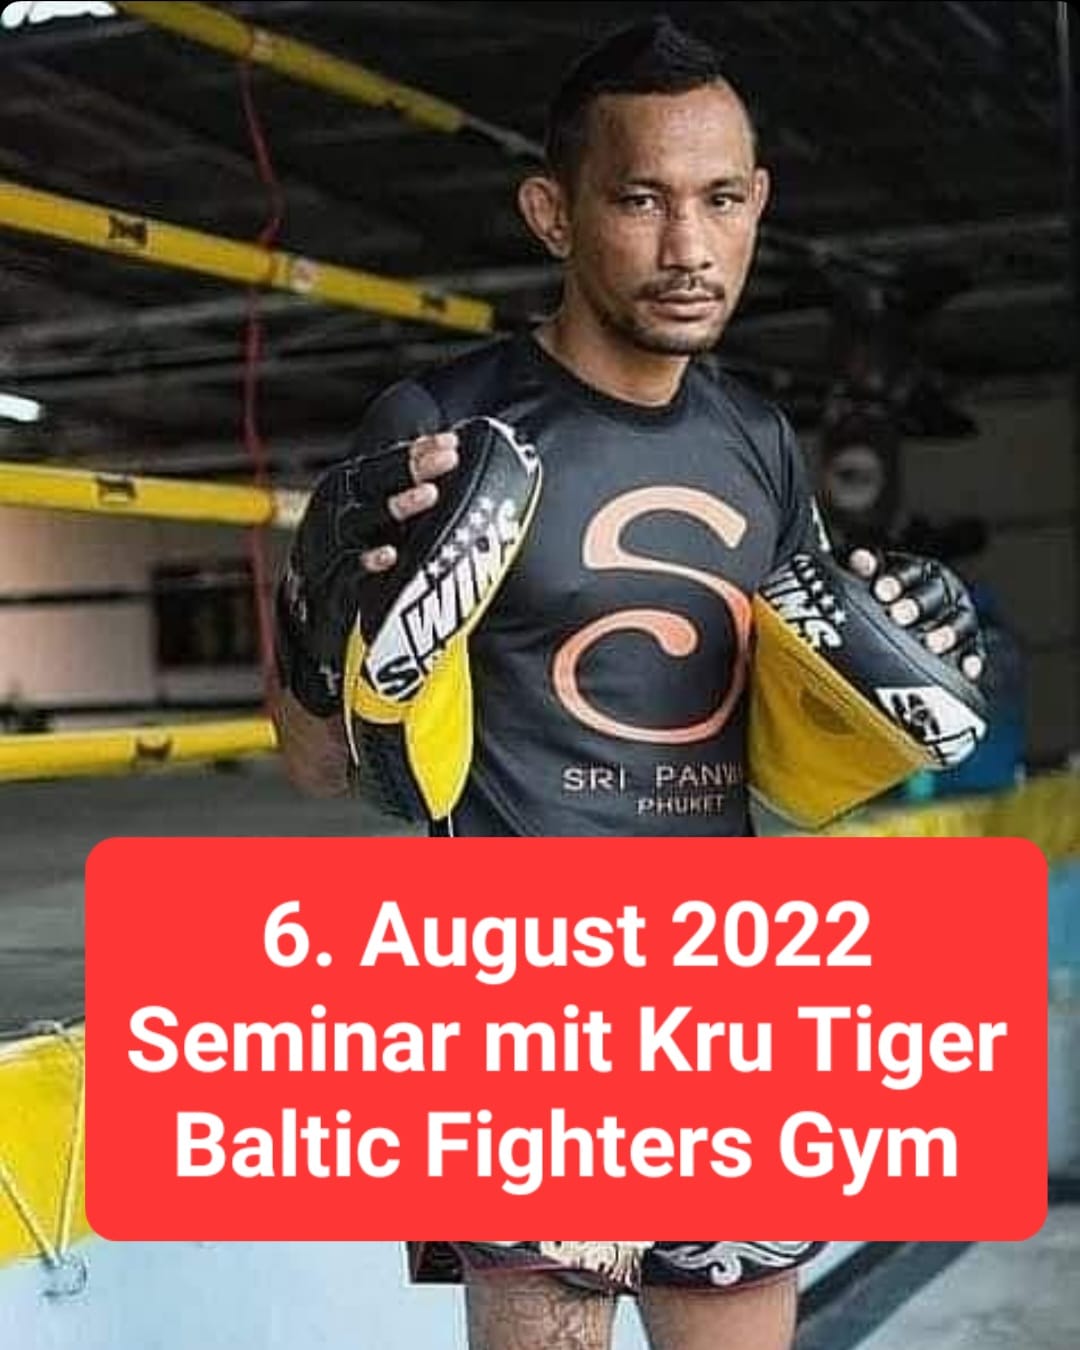 Seminar mit Kru Tiger im Baltic Fighters Gym am 6. August 2022